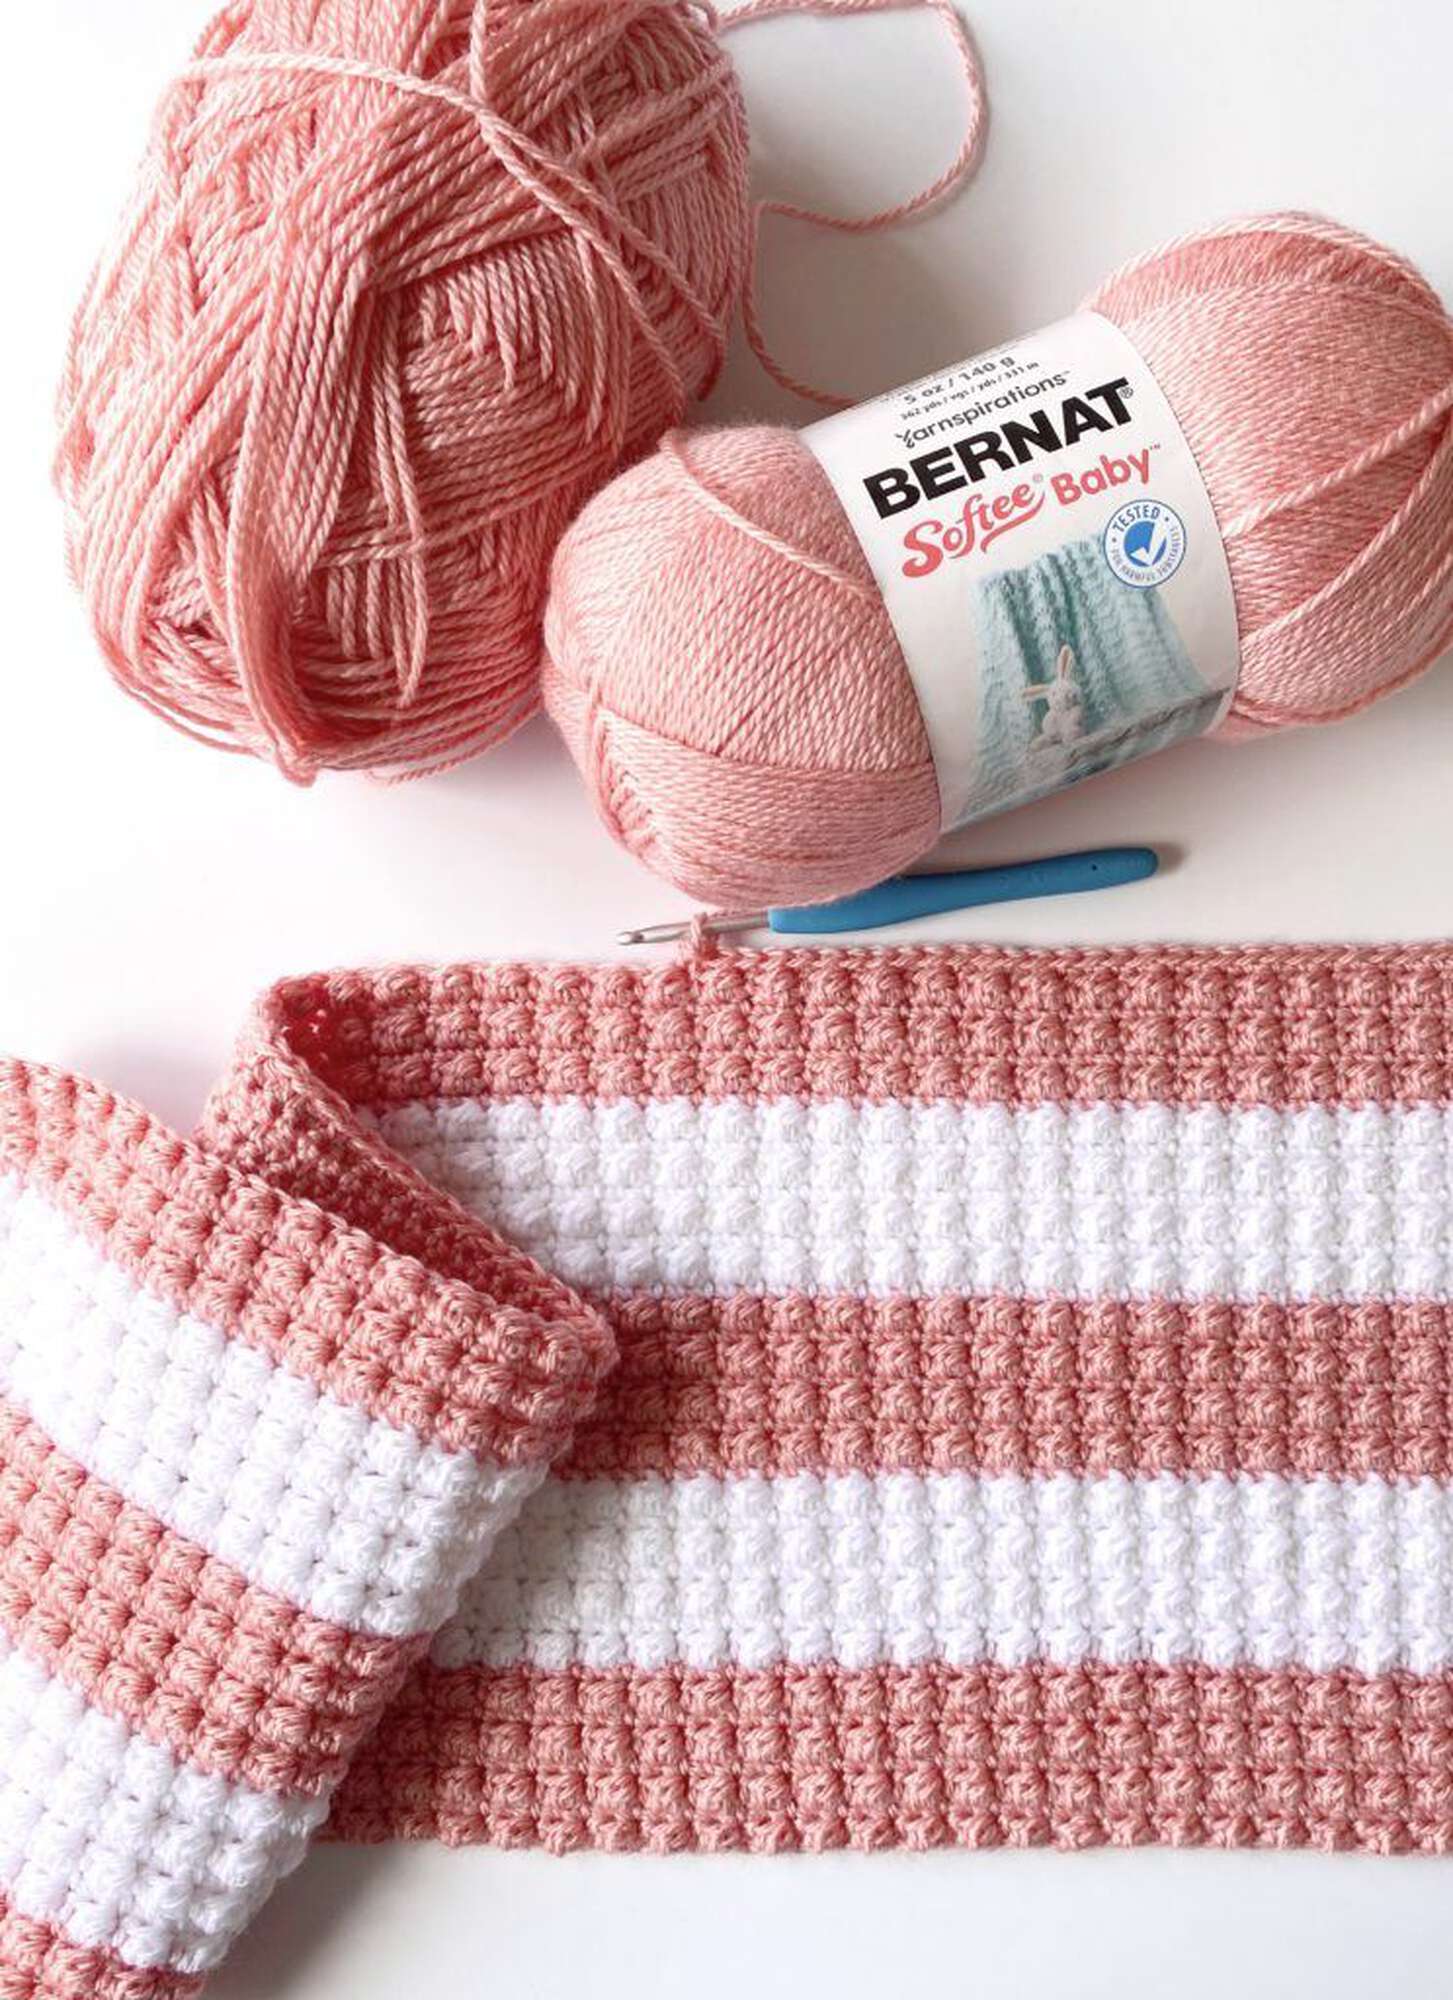 Free Bernat Crochet Fruity Stripes Crochet Baby Blanket Pattern